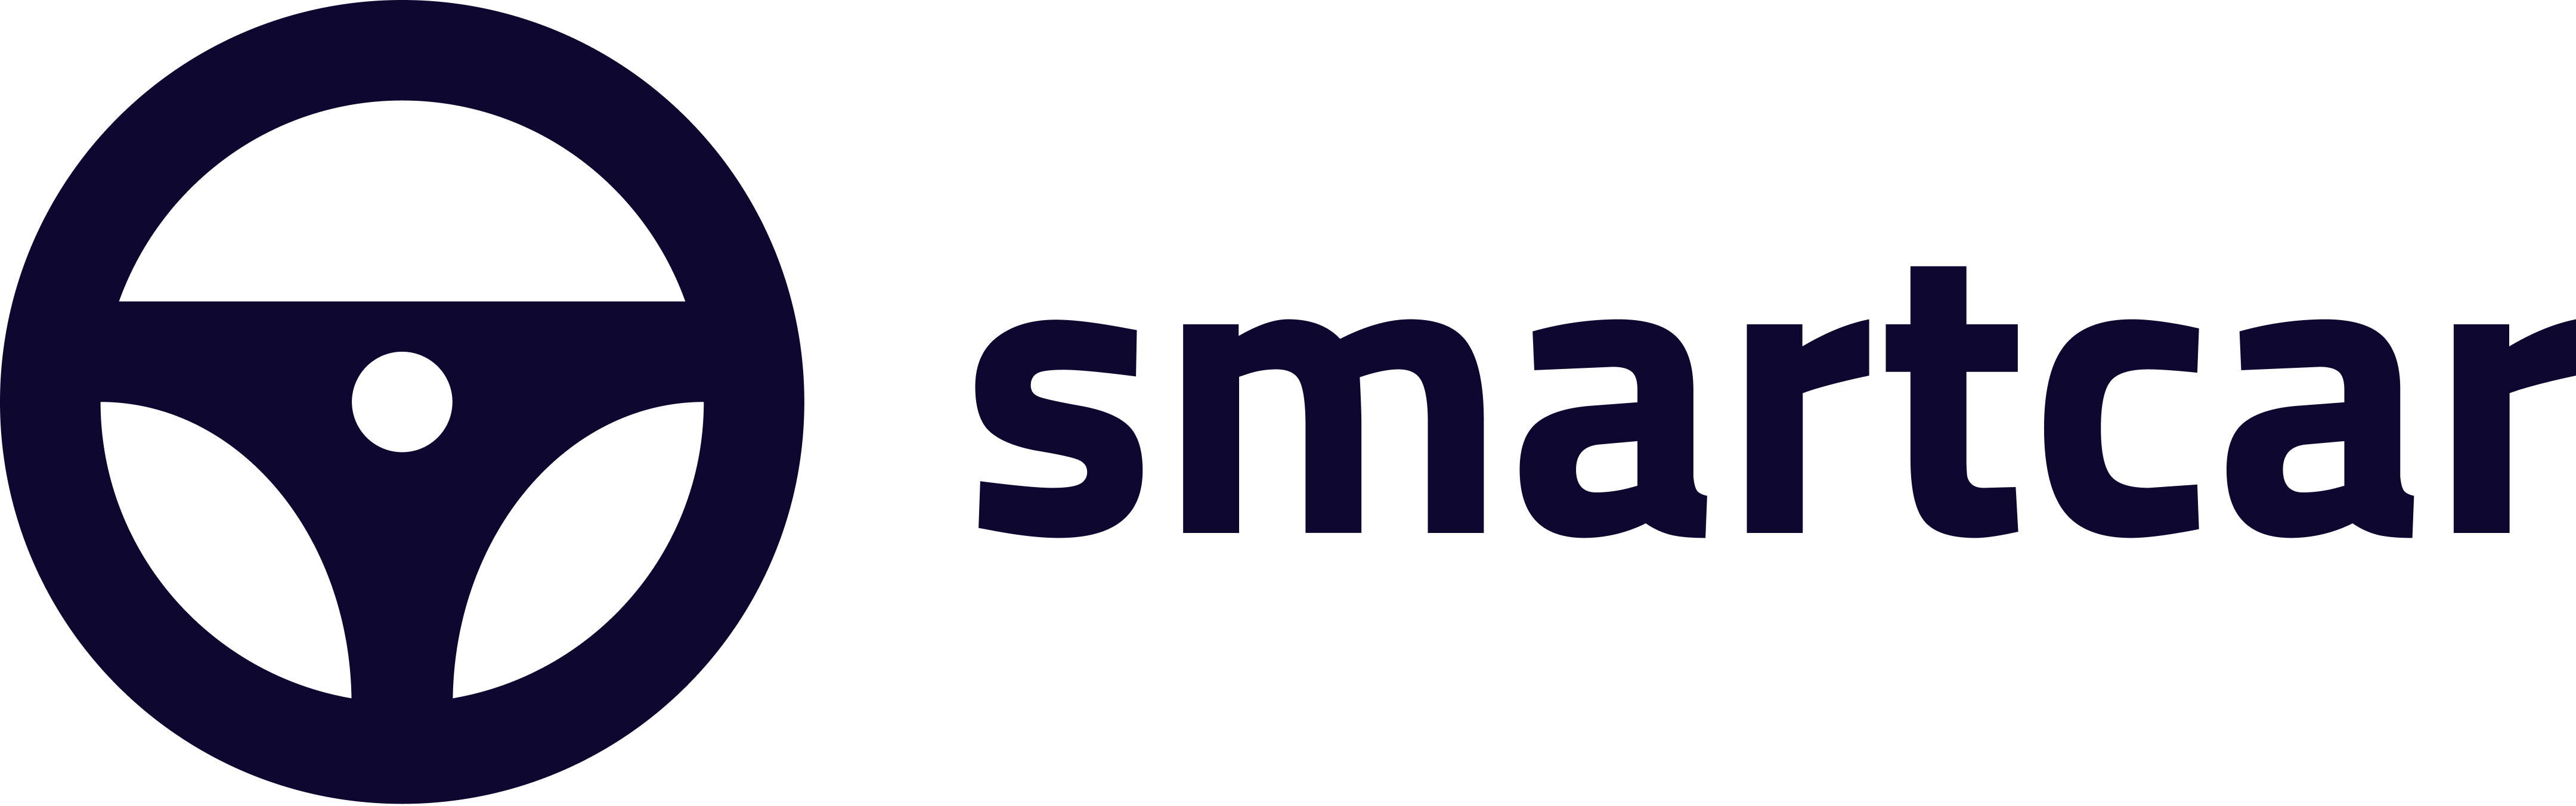 Smart Car Logo - Smartcar